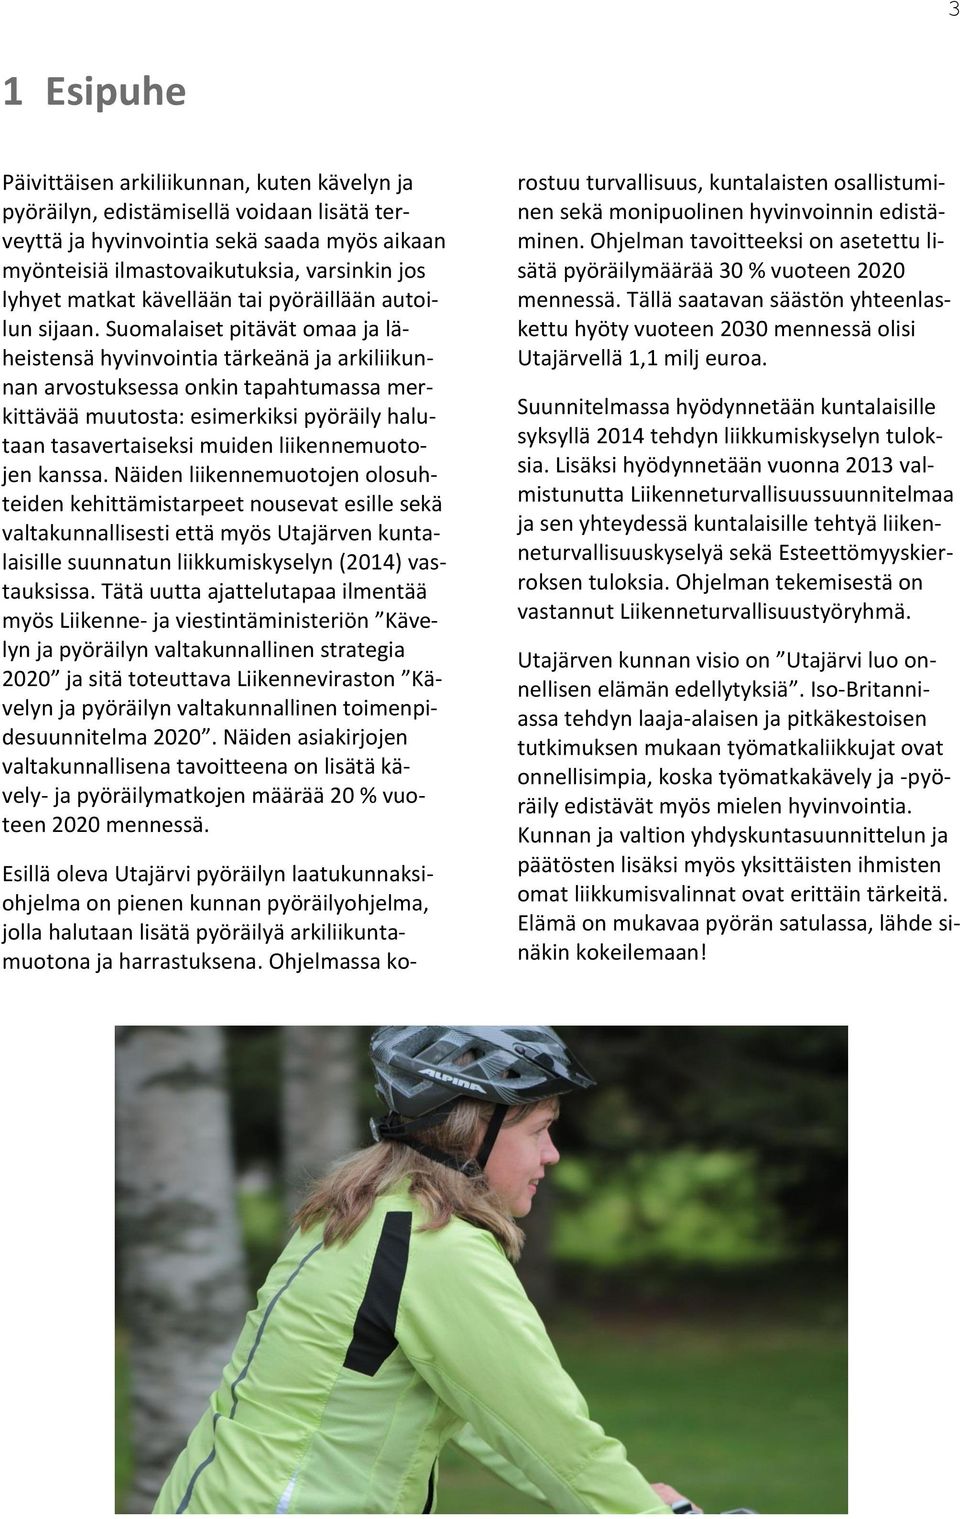 Suomalaiset pitävät omaa ja läheistensä hyvinvointia tärkeänä ja arkiliikunnan arvostuksessa onkin tapahtumassa merkittävää muutosta: esimerkiksi pyöräily halutaan tasavertaiseksi muiden